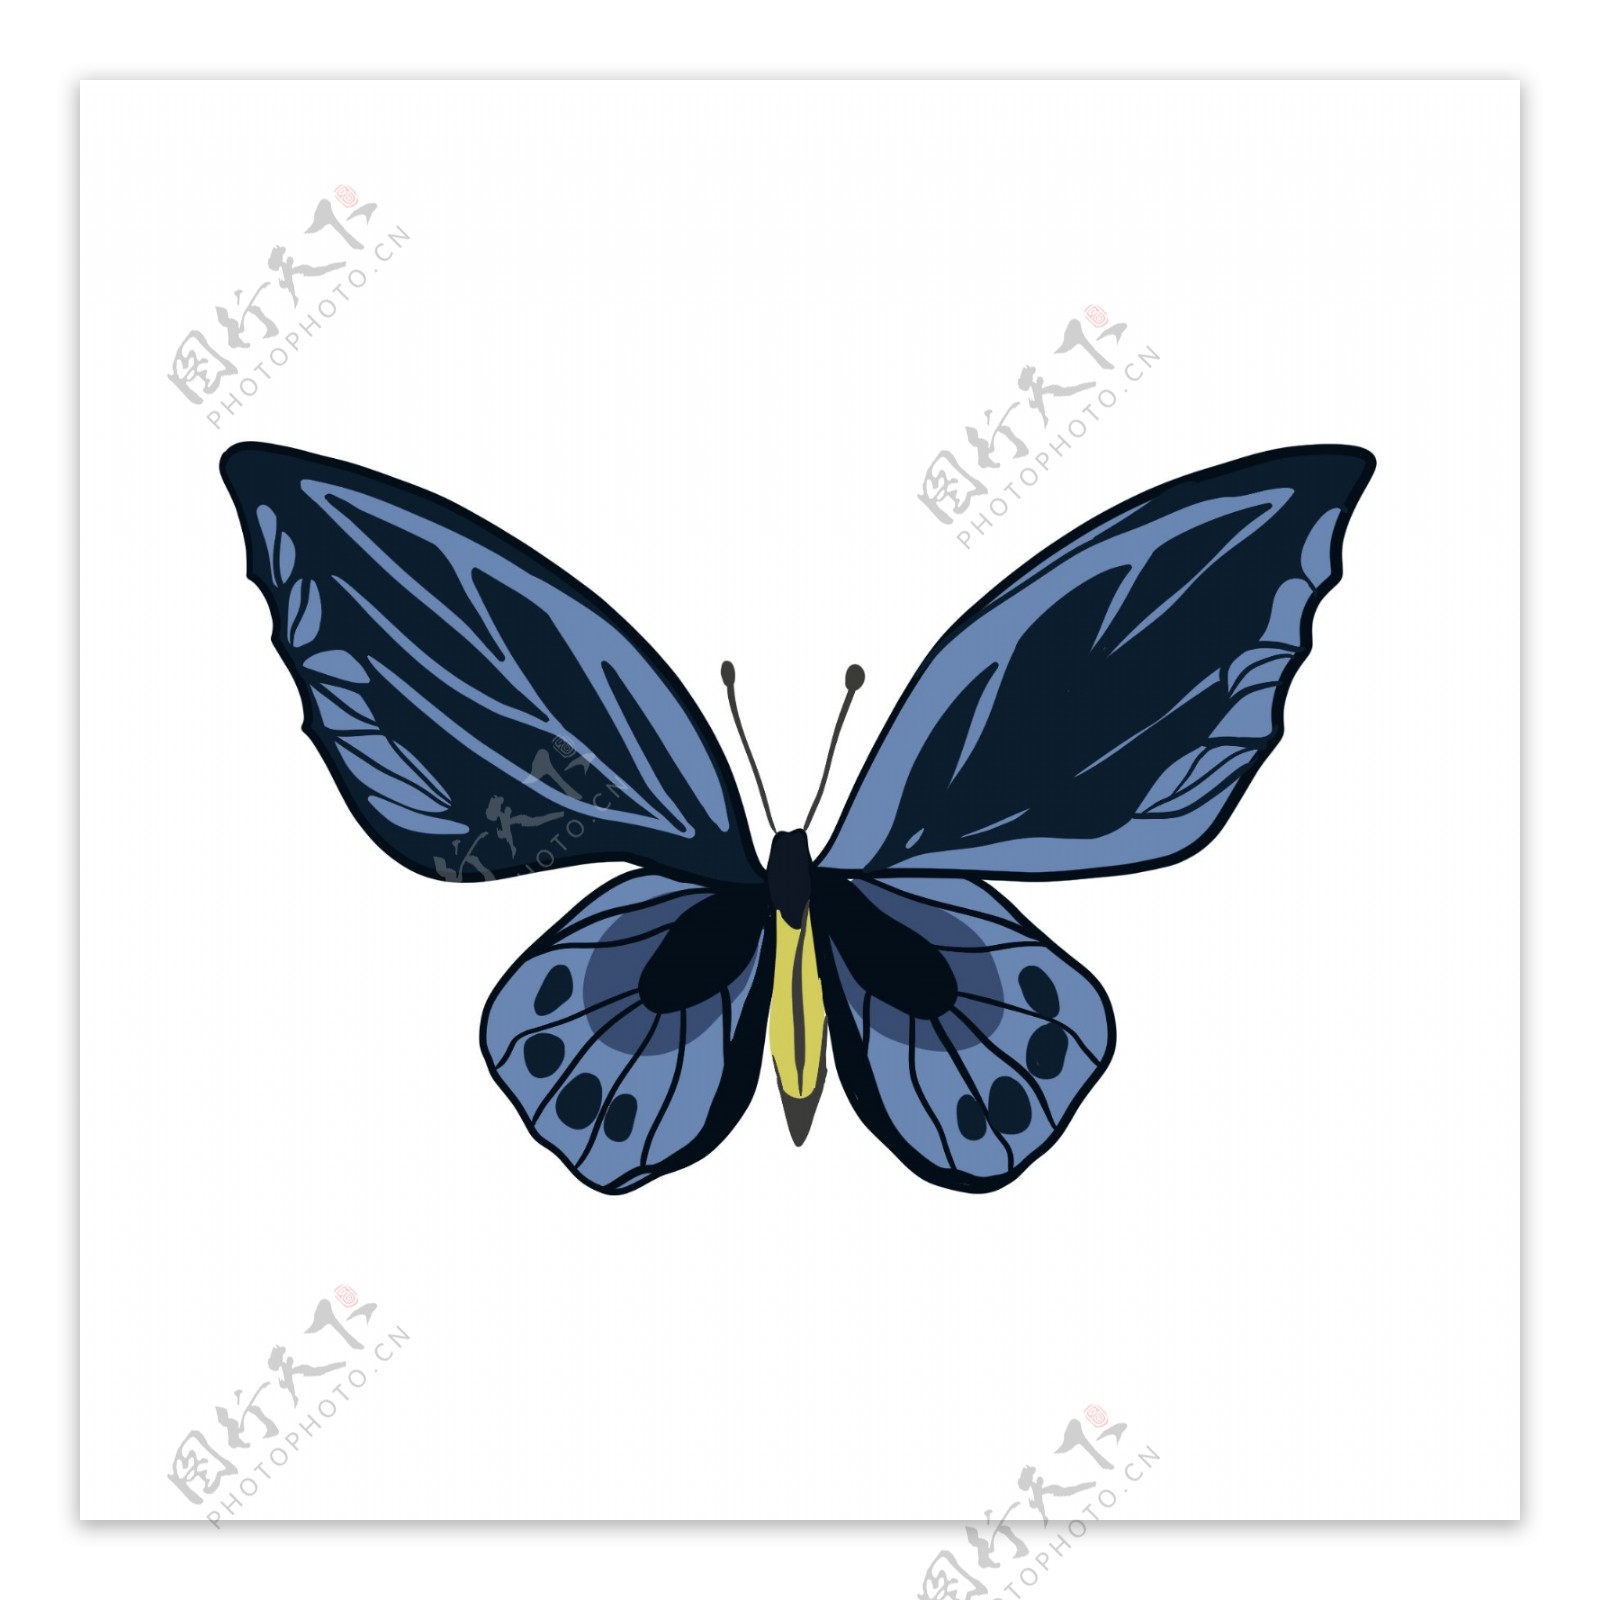 蓝黑色蝴蝶手绘素材